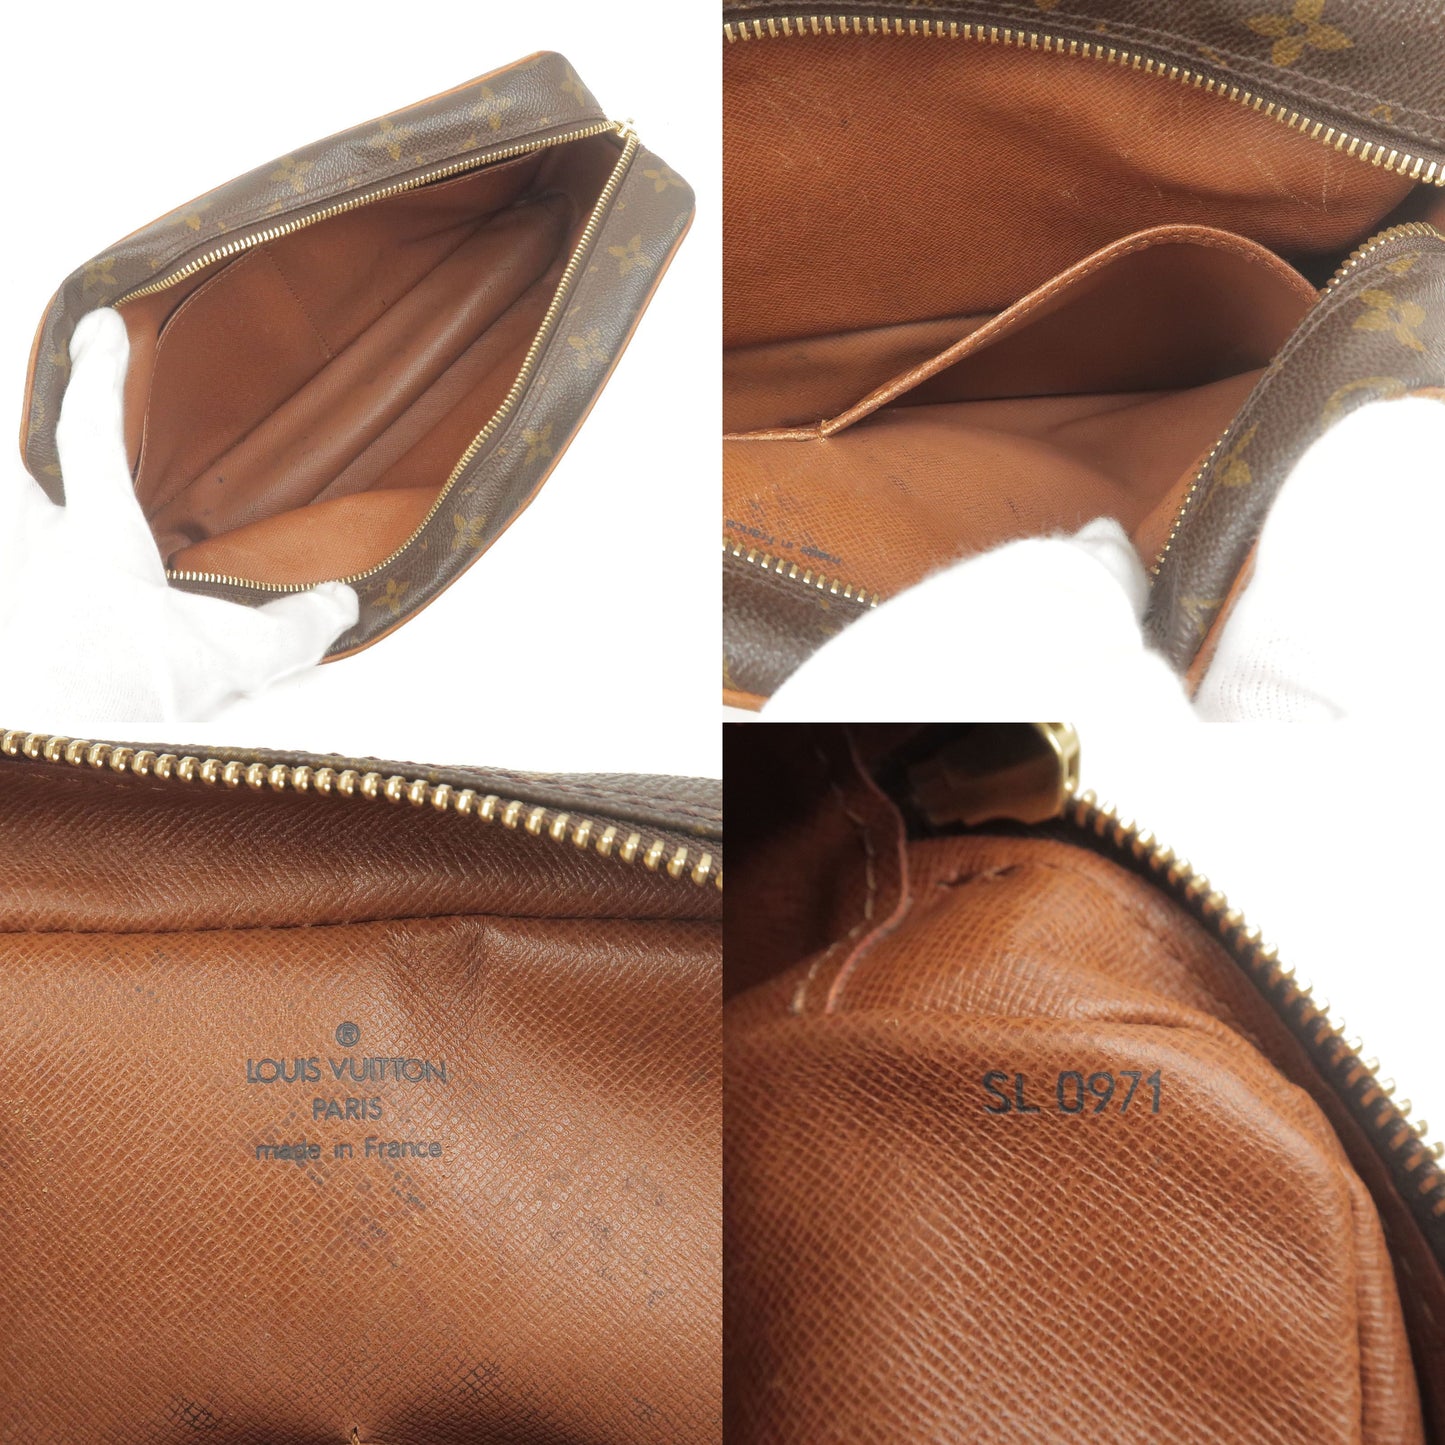 Set of 2 Louis Vuitton Monogram Compiegne 28 Pouch Bag M51845